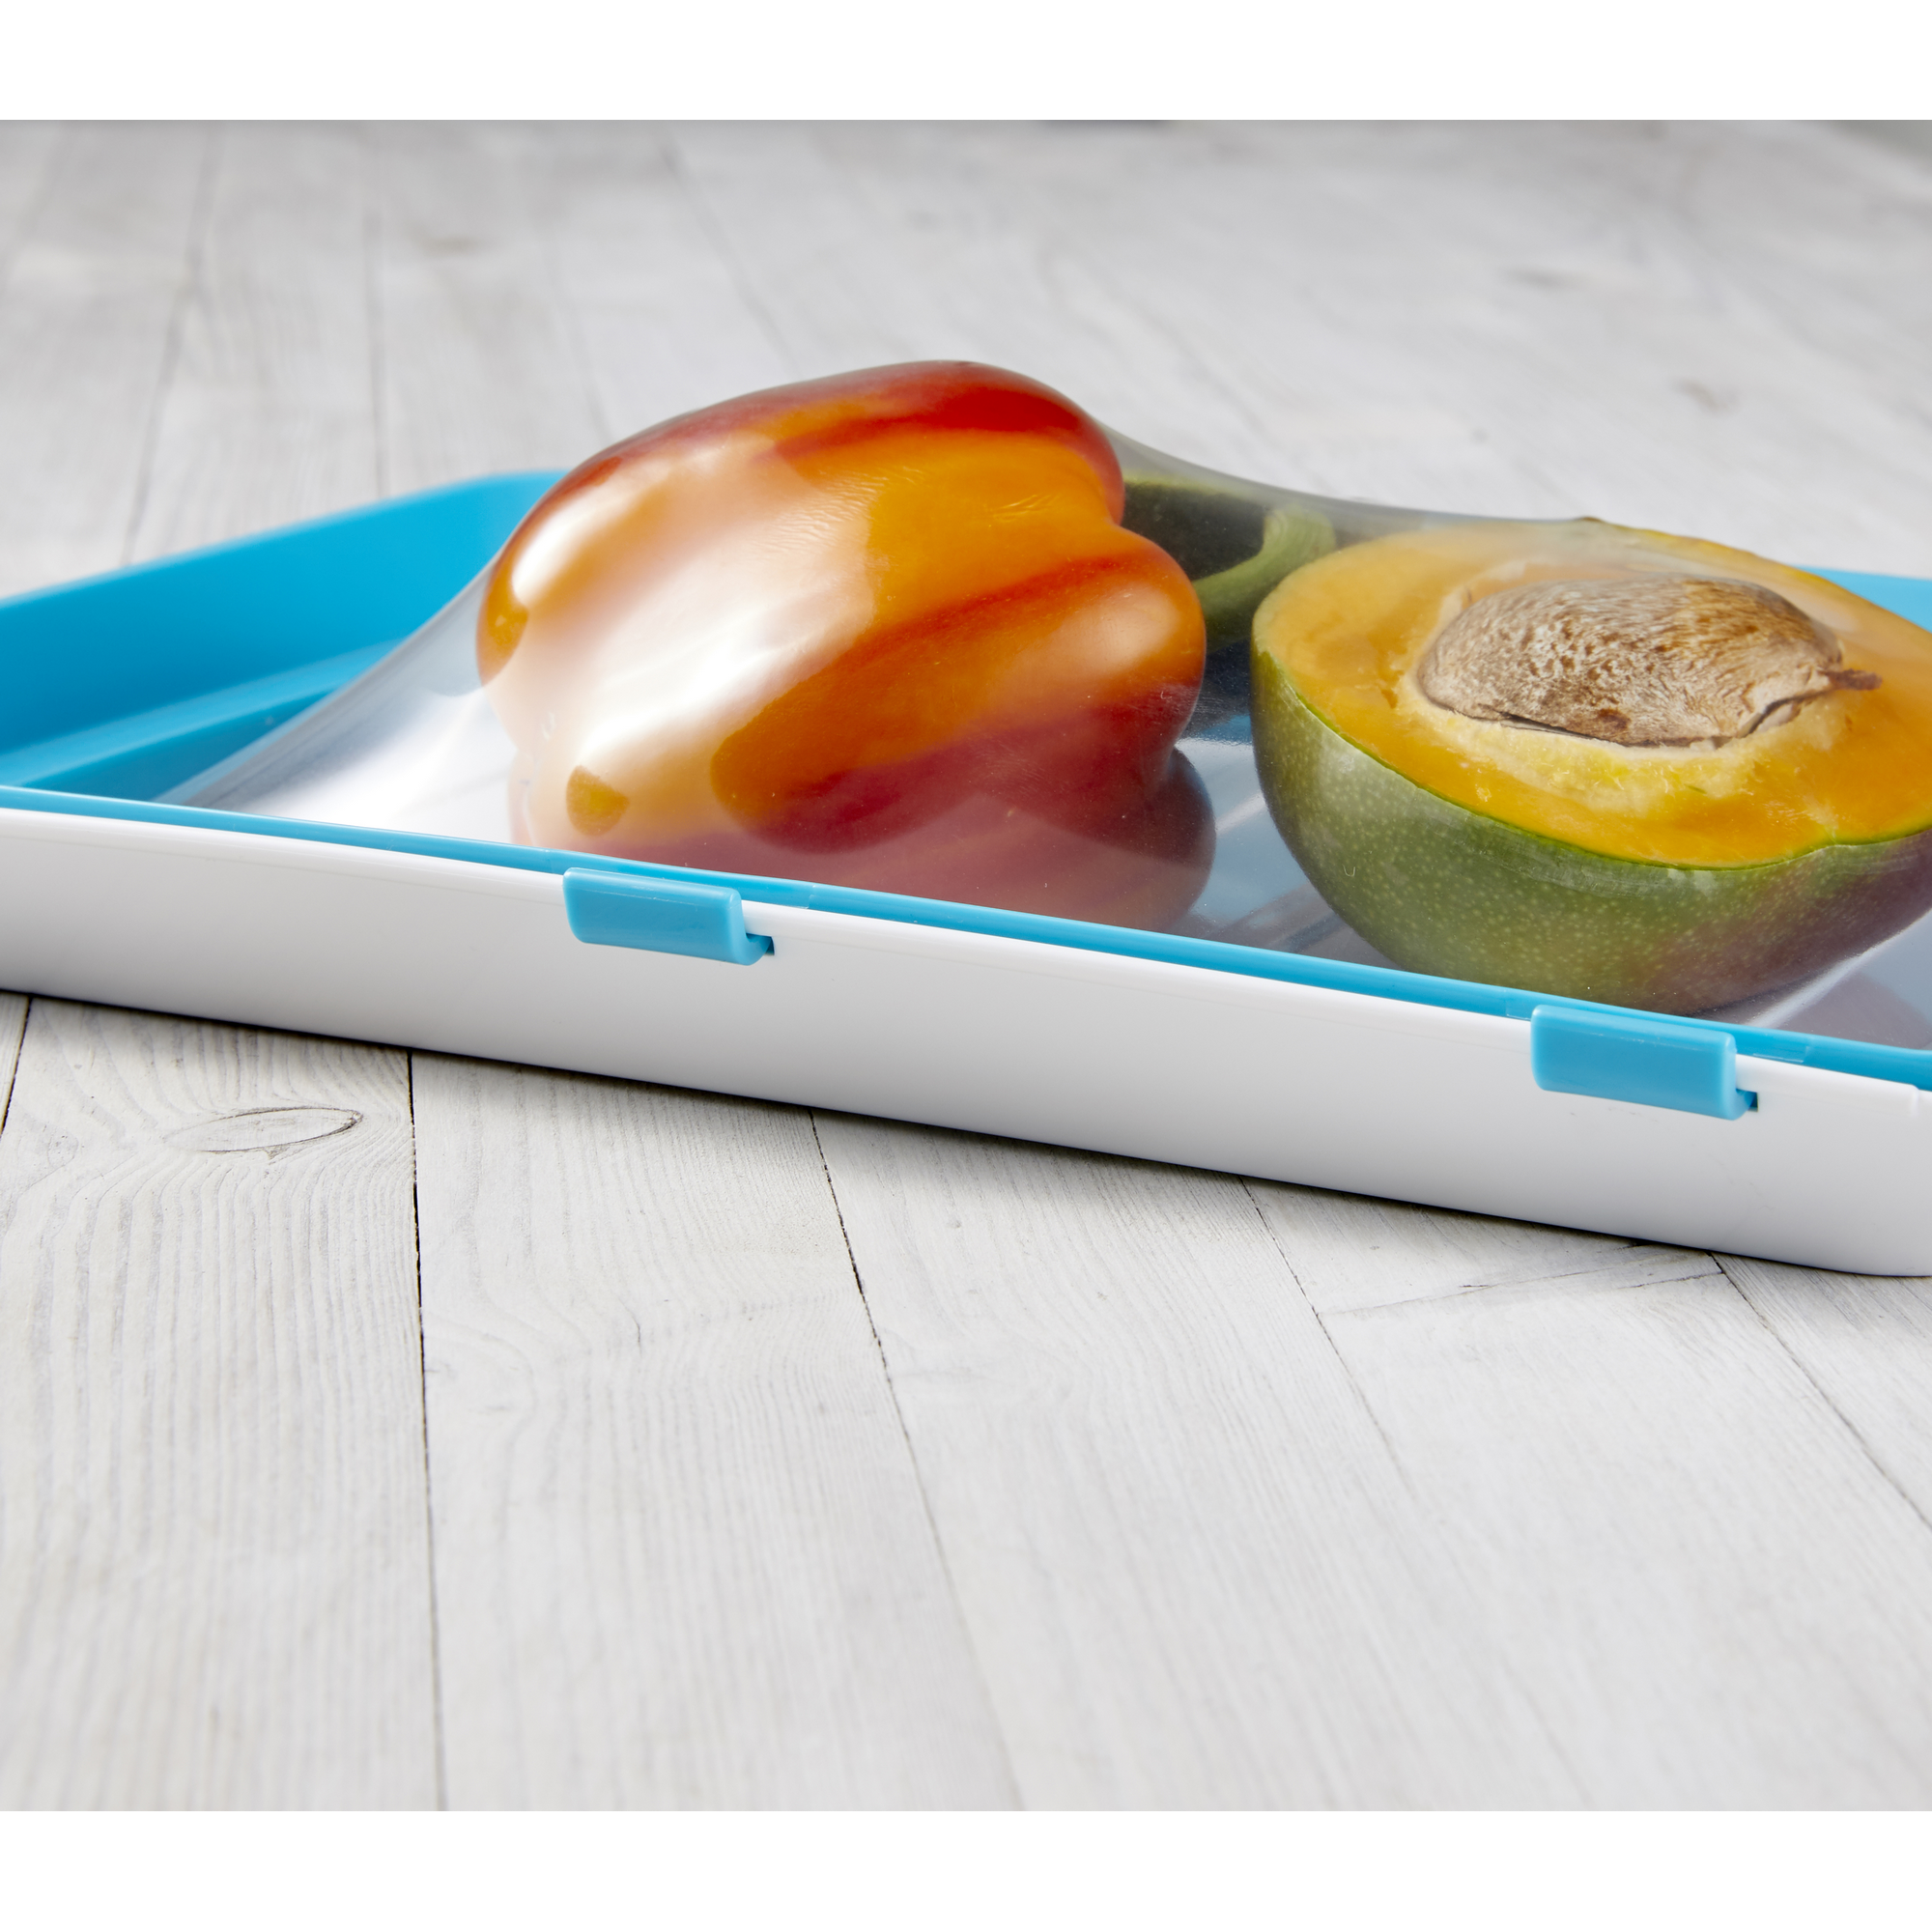 Frischhalteboxen-Set 'Fresh & Clik'  235 x 315 x 50 mm, blau/grau, 2-teilig + product picture